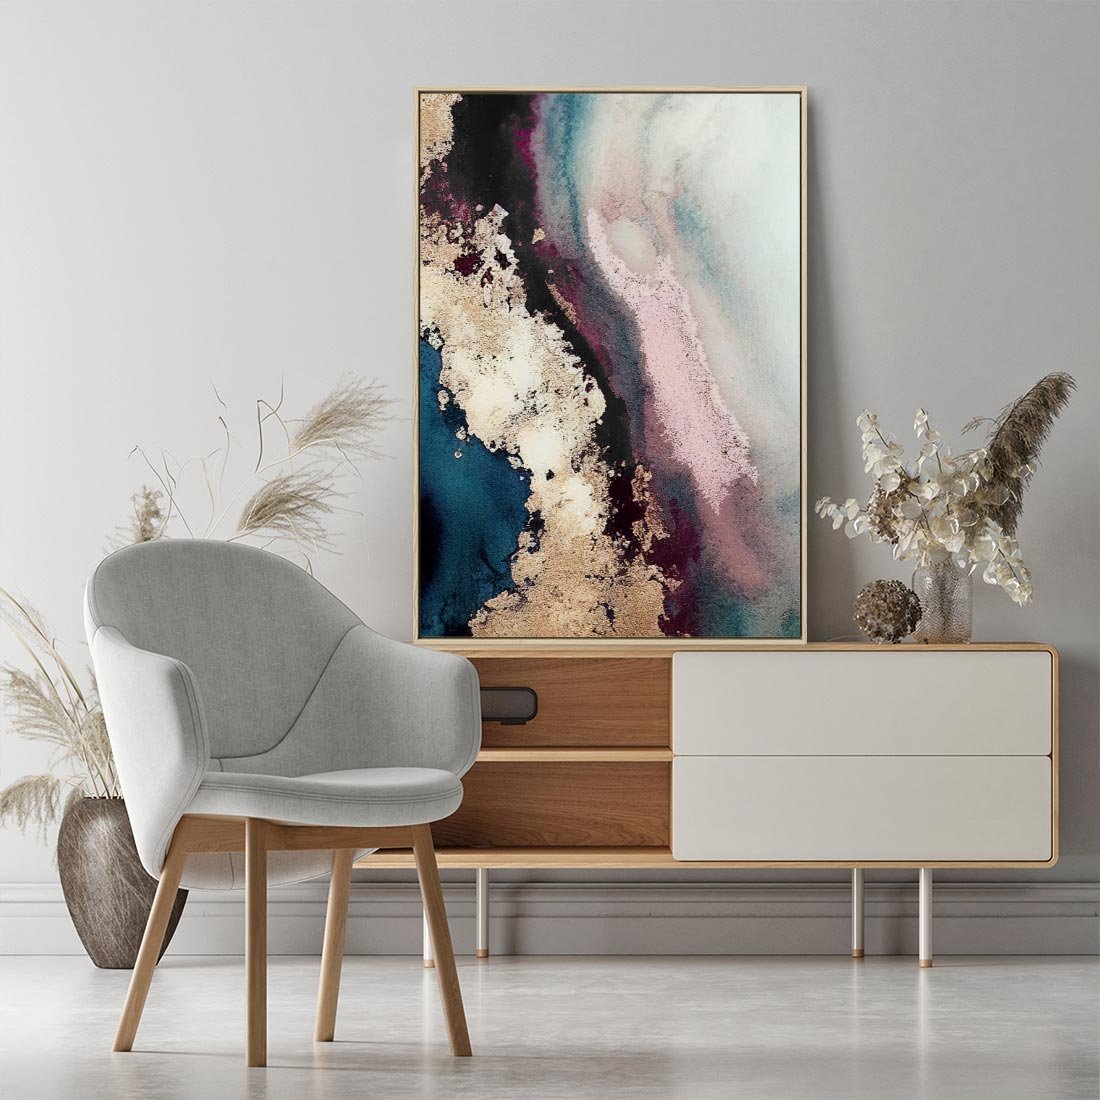 Obraz w ramie 50x70 - Elegancki Impuls - abstrakcyjne plamy, rozlana farba - rama drewno